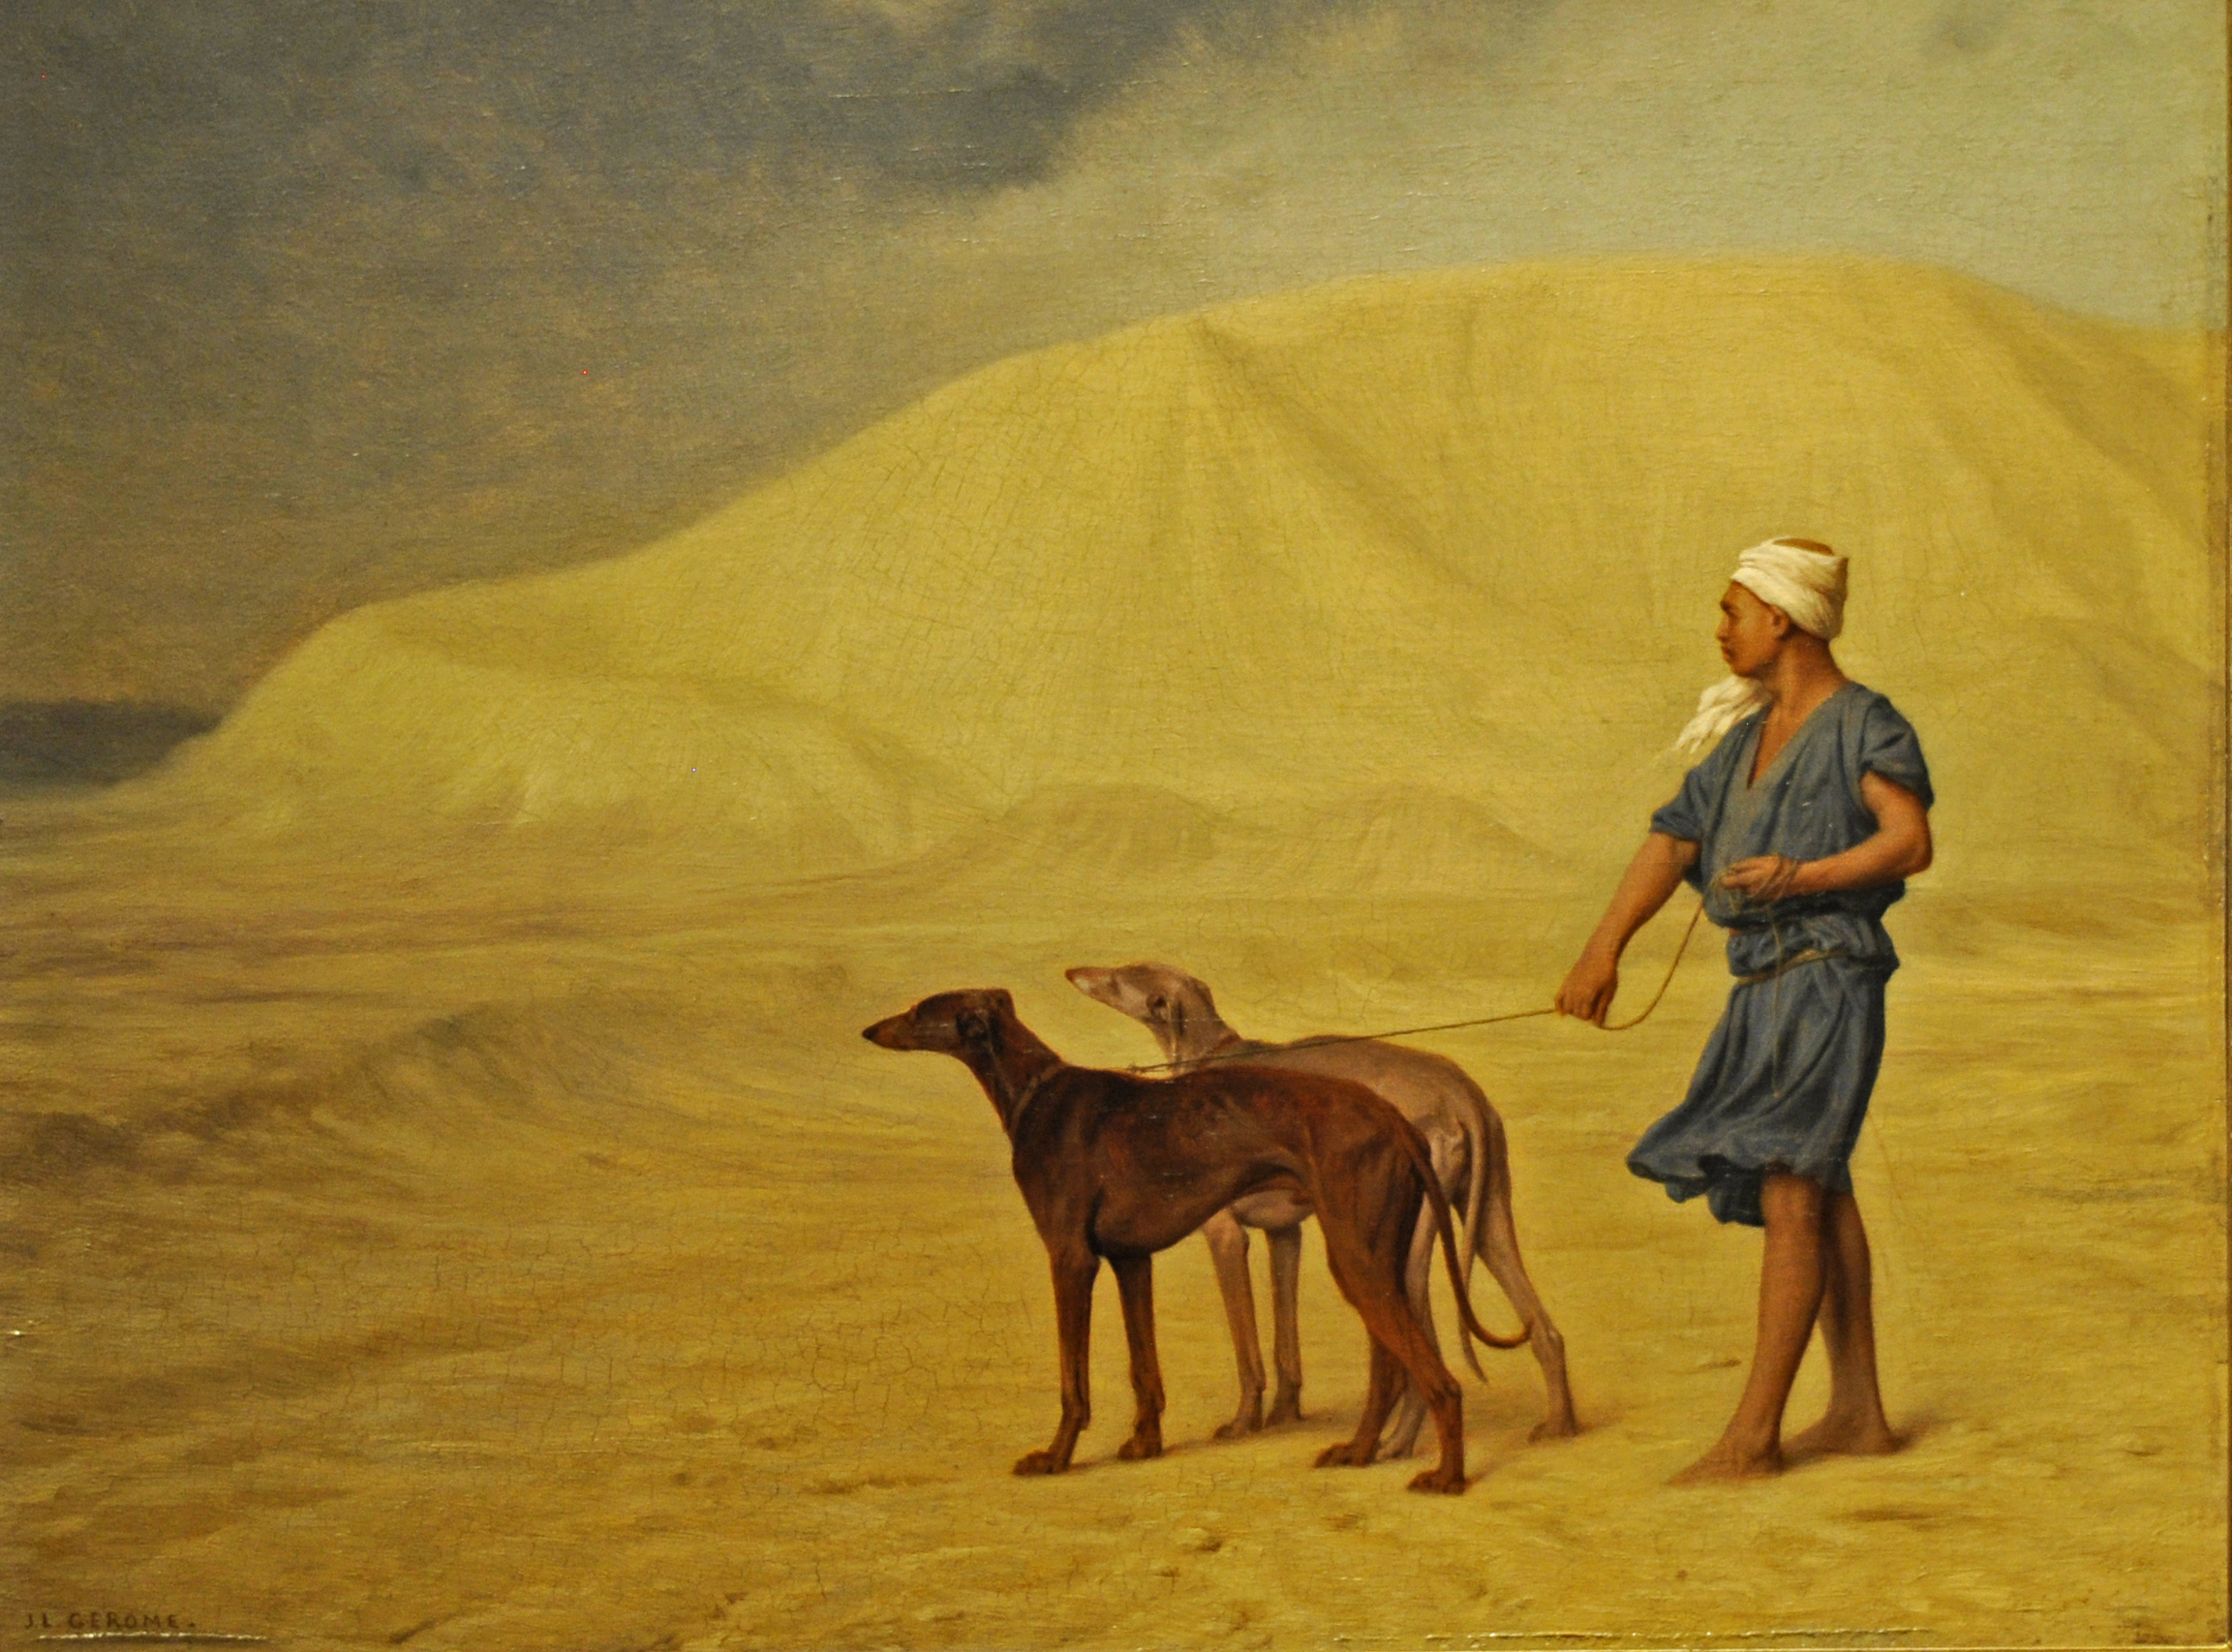 No Deserto by Jean-Léon Gérôme - 1867 - 21 x 26.8 cm 